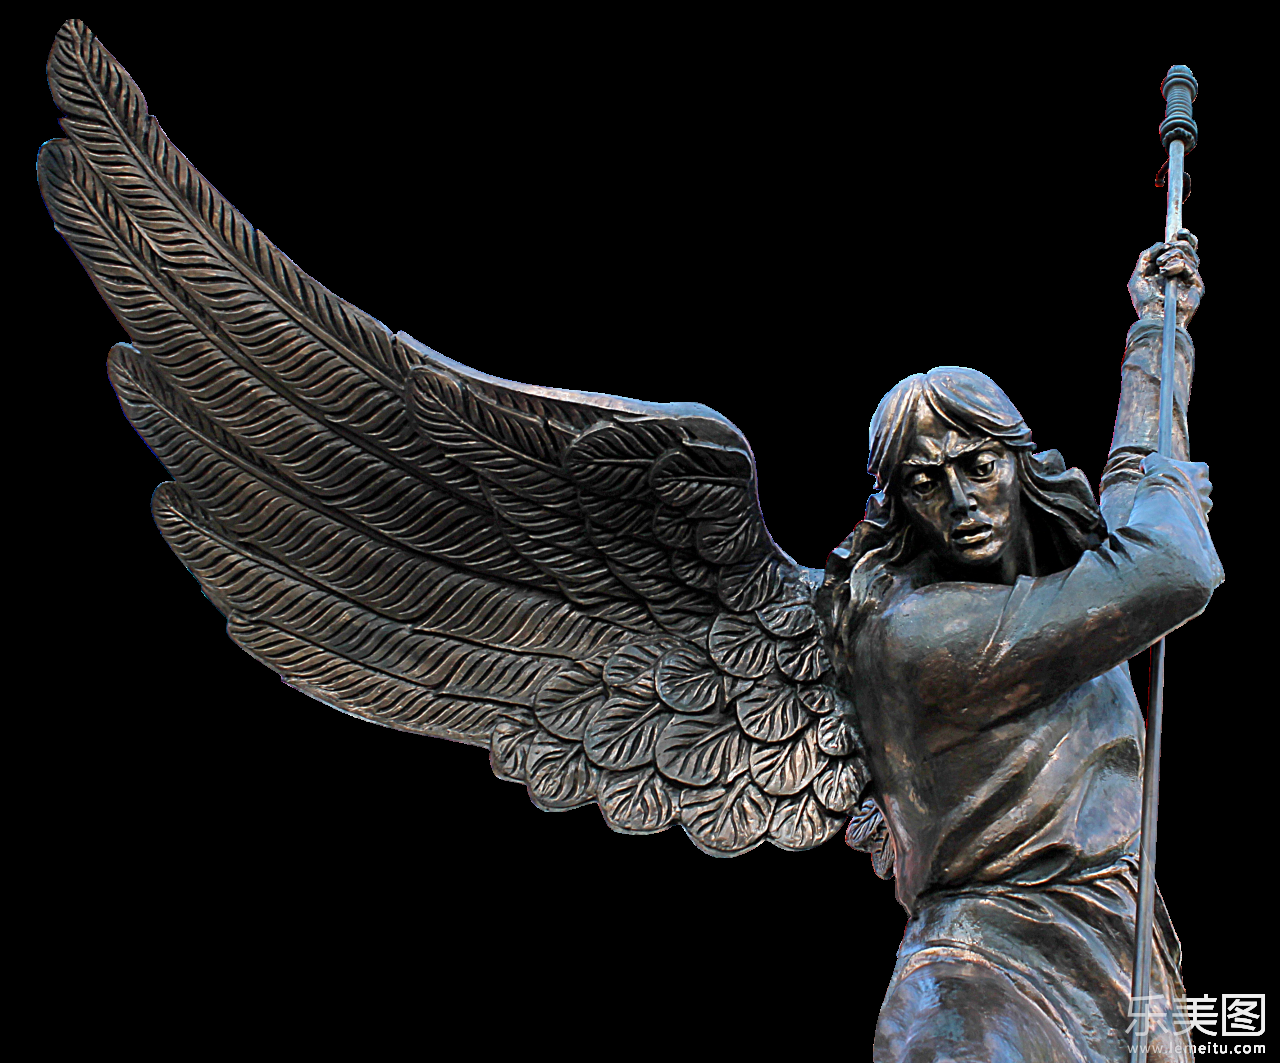 拿着长刺的天使雕塑铜像摄影